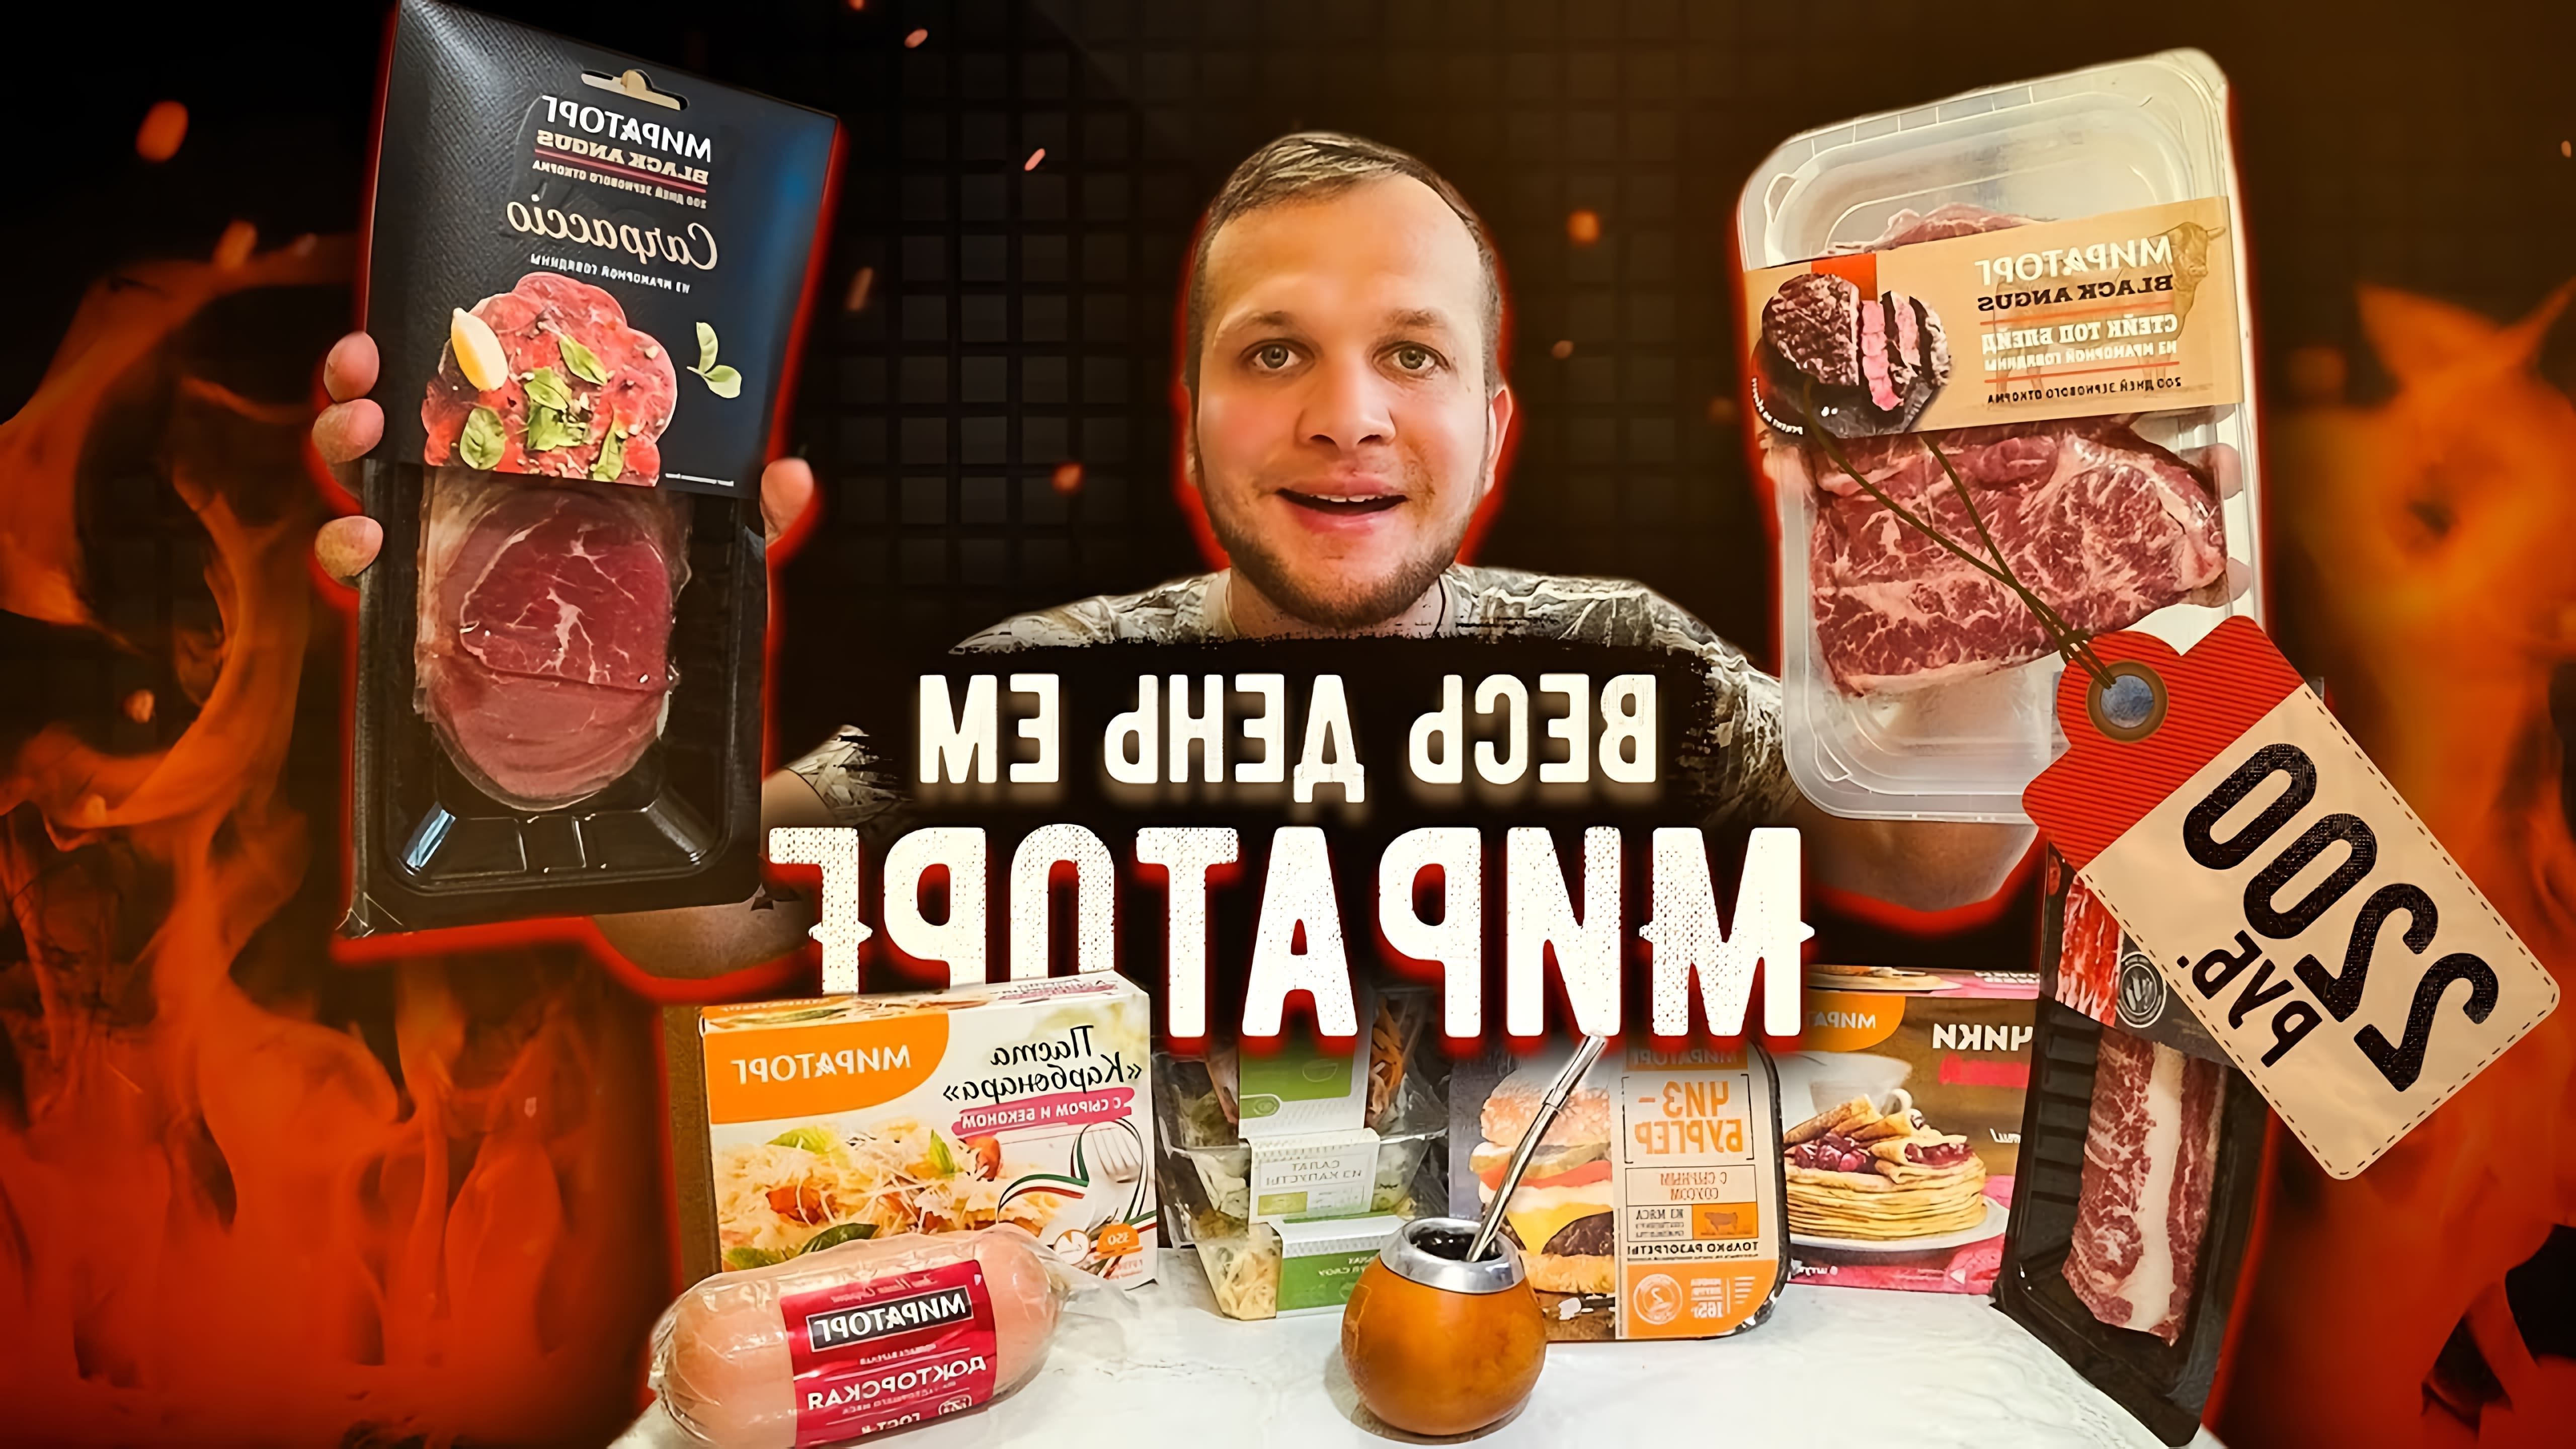 В данном видео Сан Саныч Богомолов рассказывает о своем опыте использования продуктов компании "Мираторг" в течение всего дня